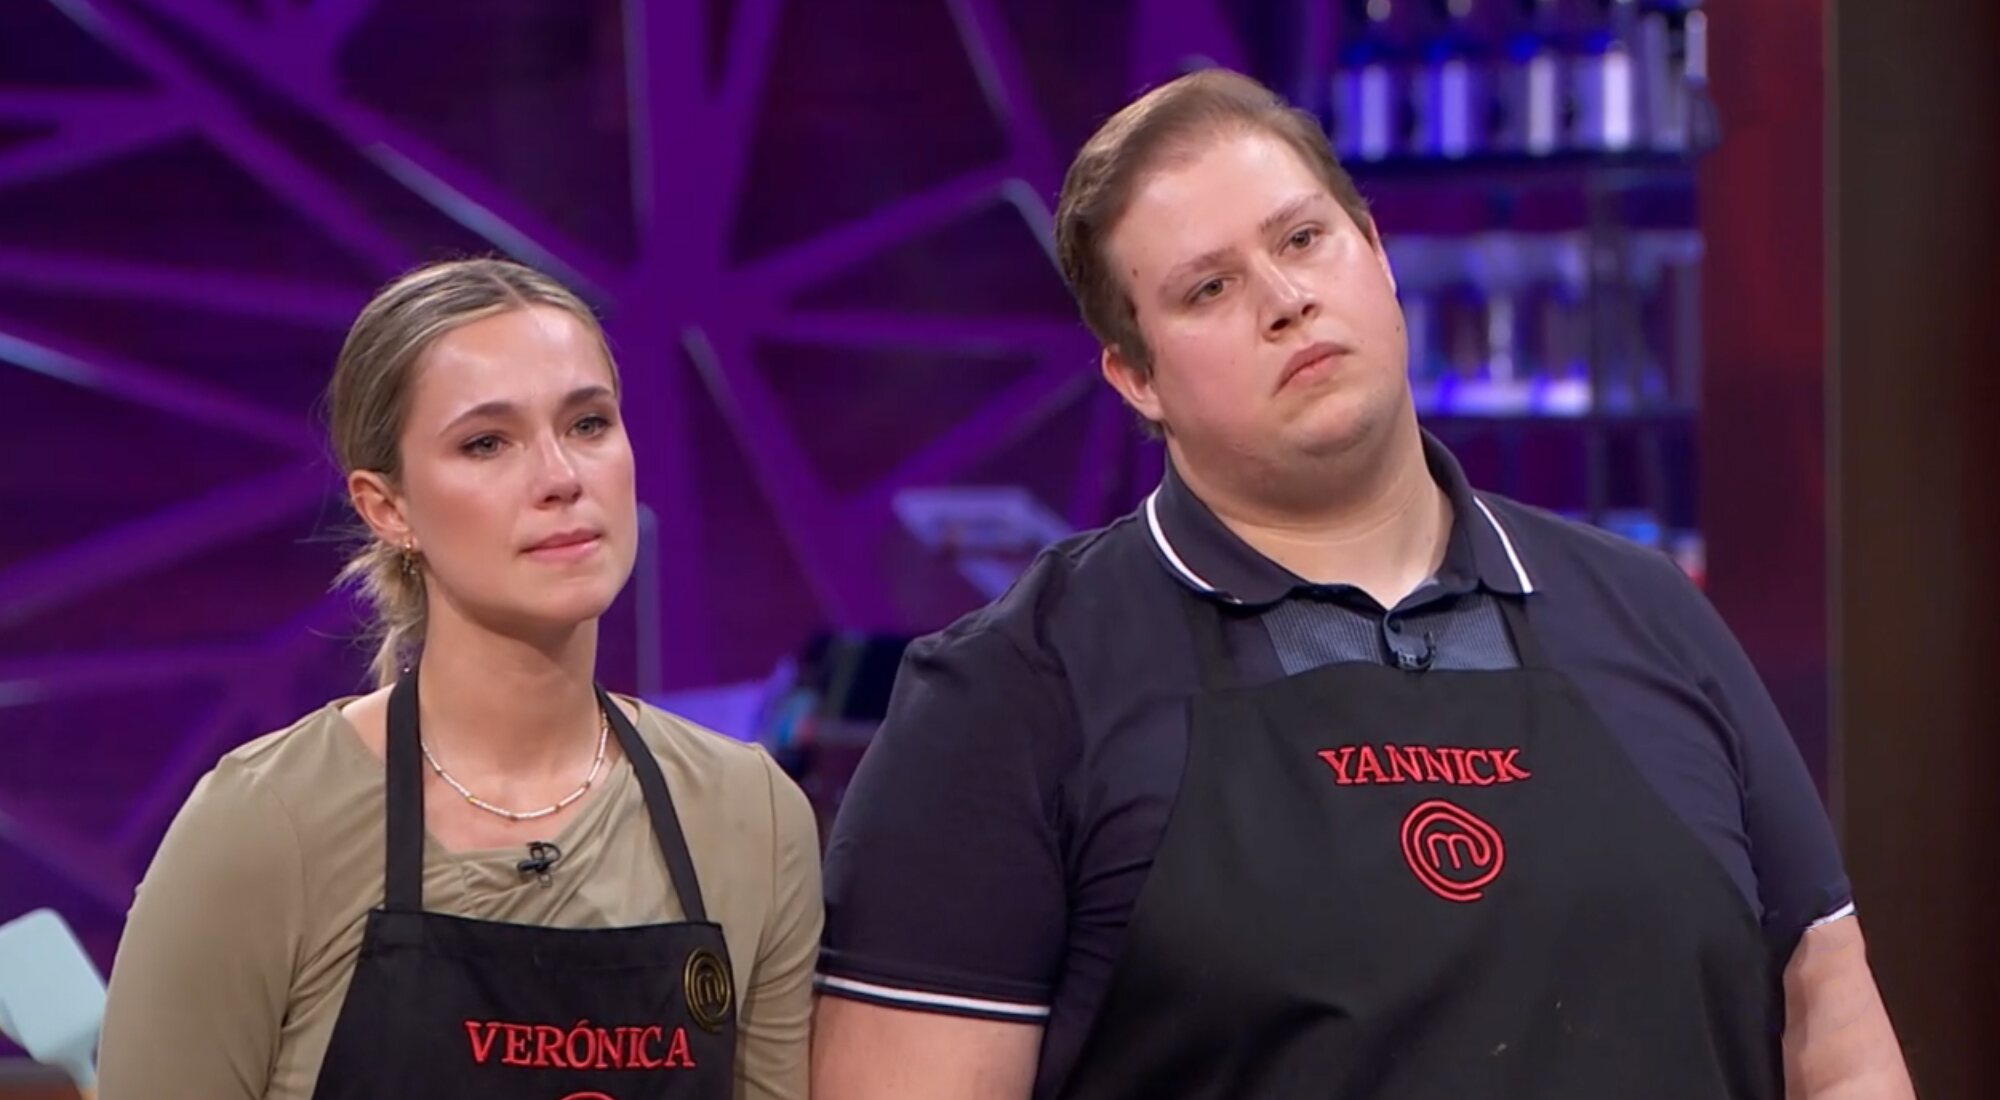 Verónica y Yannick, antes de que el aspirante fuera expulsado de 'MasterChef 10'